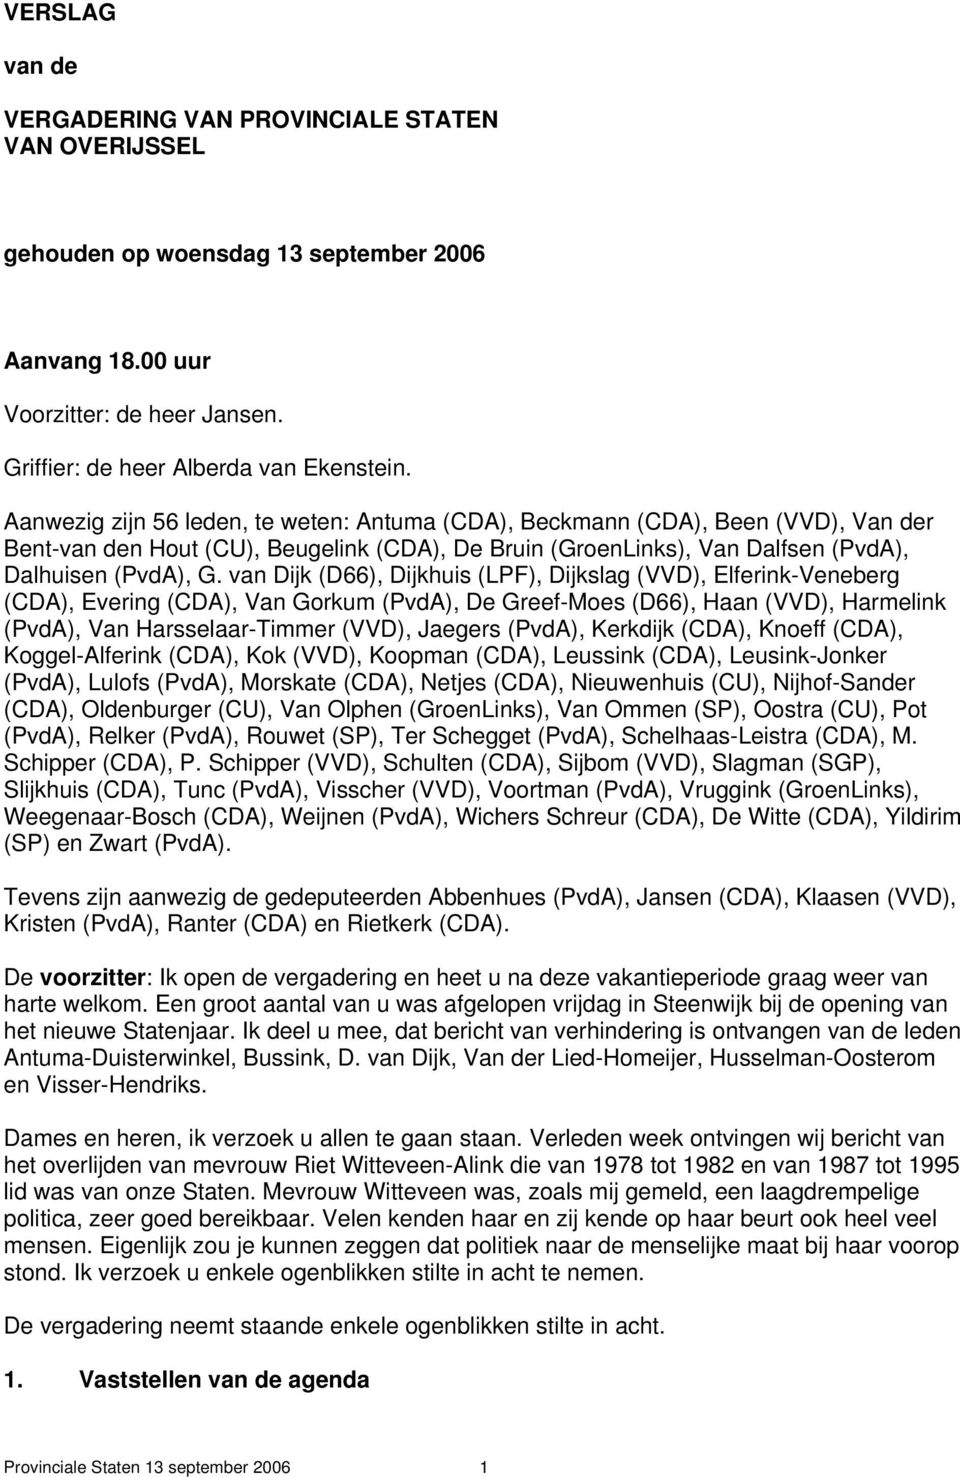 van Dijk (D66), Dijkhuis (LPF), Dijkslag (VVD), Elferink-Veneberg (CDA), Evering (CDA), Van Gorkum (PvdA), De Greef-Moes (D66), Haan (VVD), Harmelink (PvdA), Van Harsselaar-Timmer (VVD), Jaegers